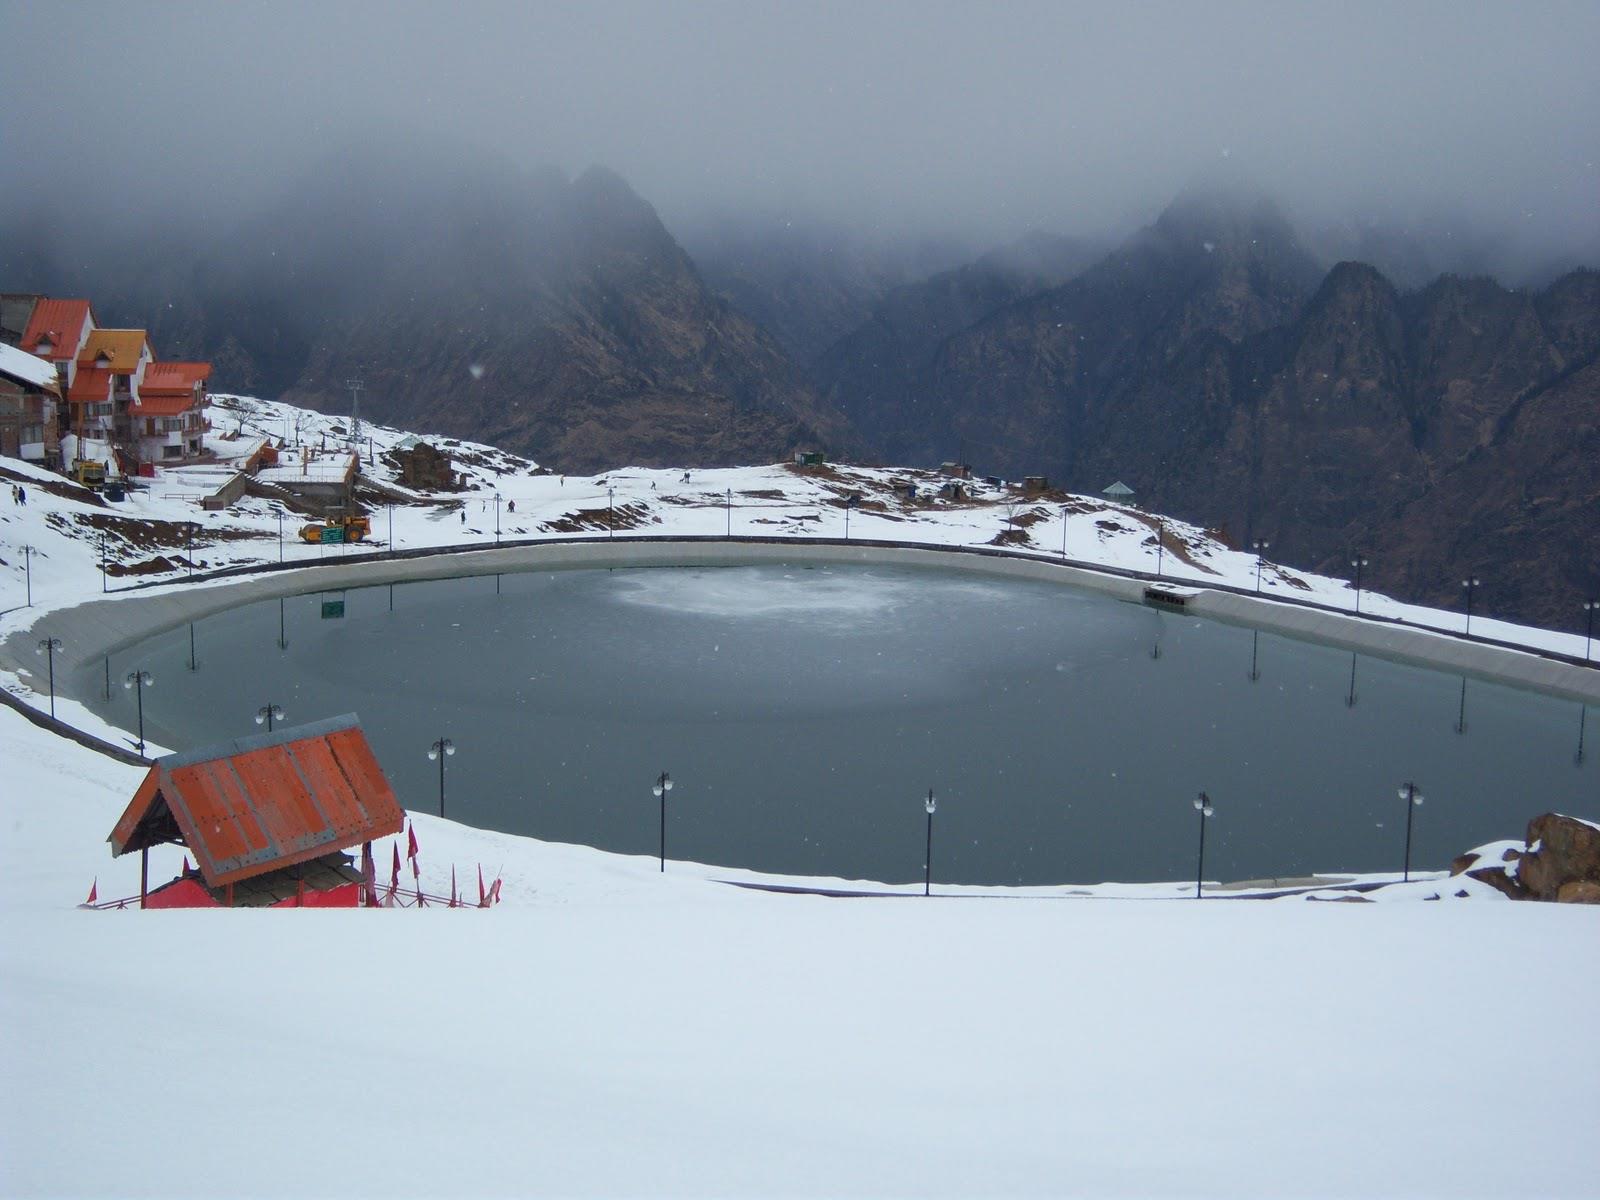 यह जगह सरकार द्वारा बनाई गई कृत्रिम औली झील के लिए प्रसिद्ध है जो विशेष रूप से कम बर्फबारी के महीनों में नई स्की ढलानों पर कृत्रिम बर्फ उपलब्ध कराने के लिए उपयोग की जाती है।